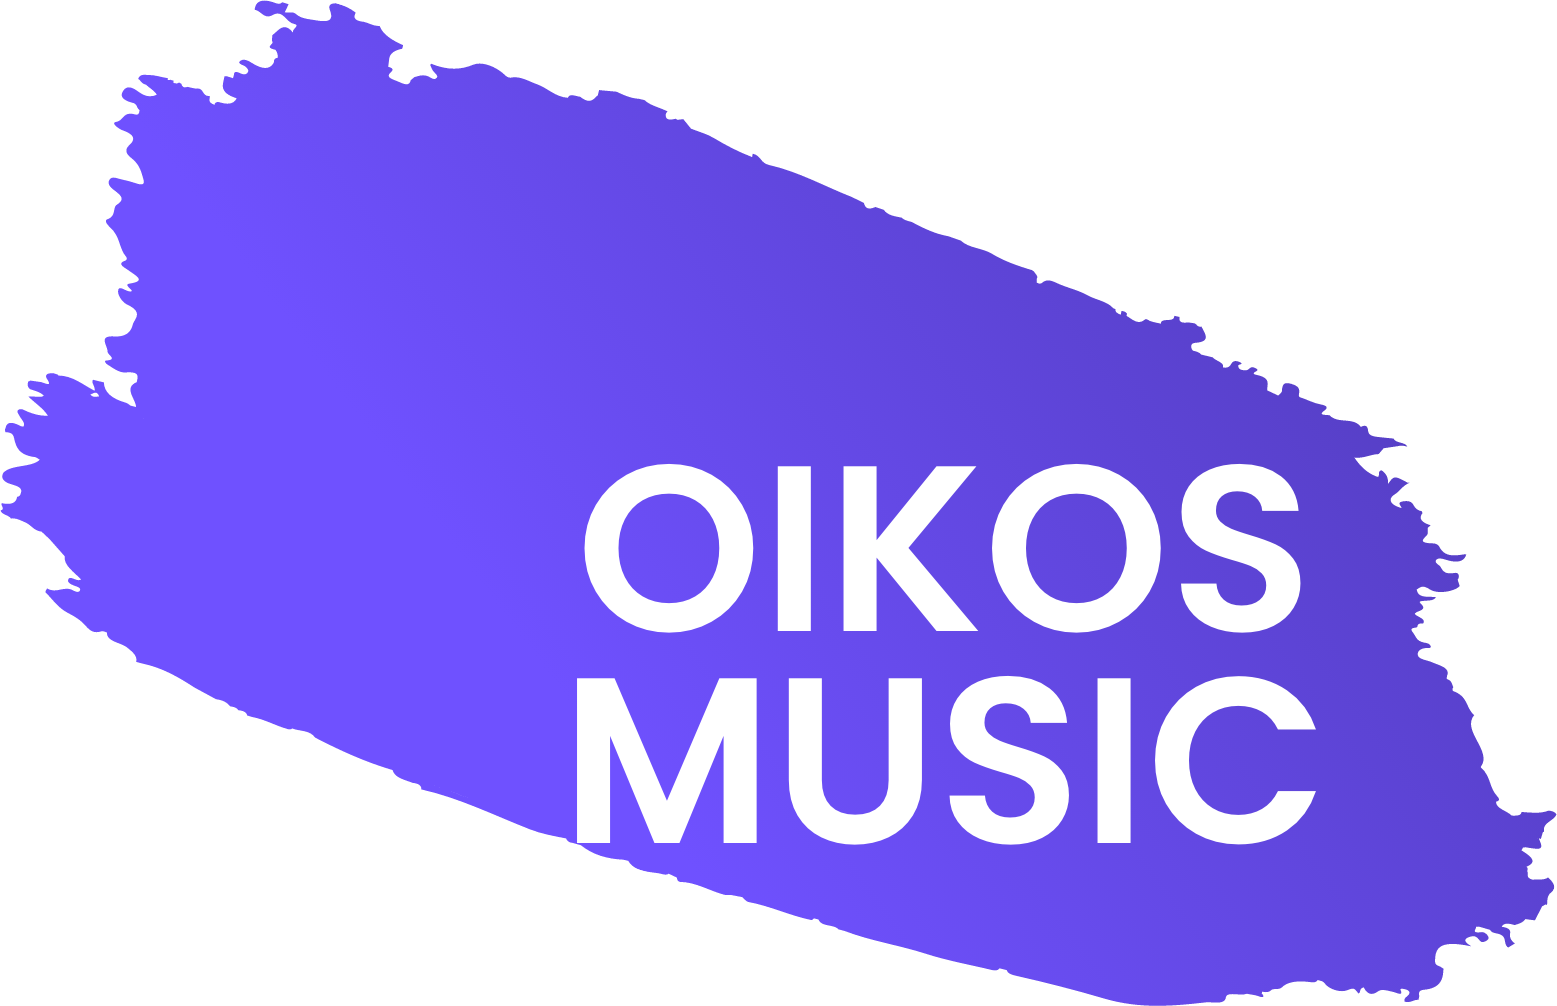 OIKOS MUSIC